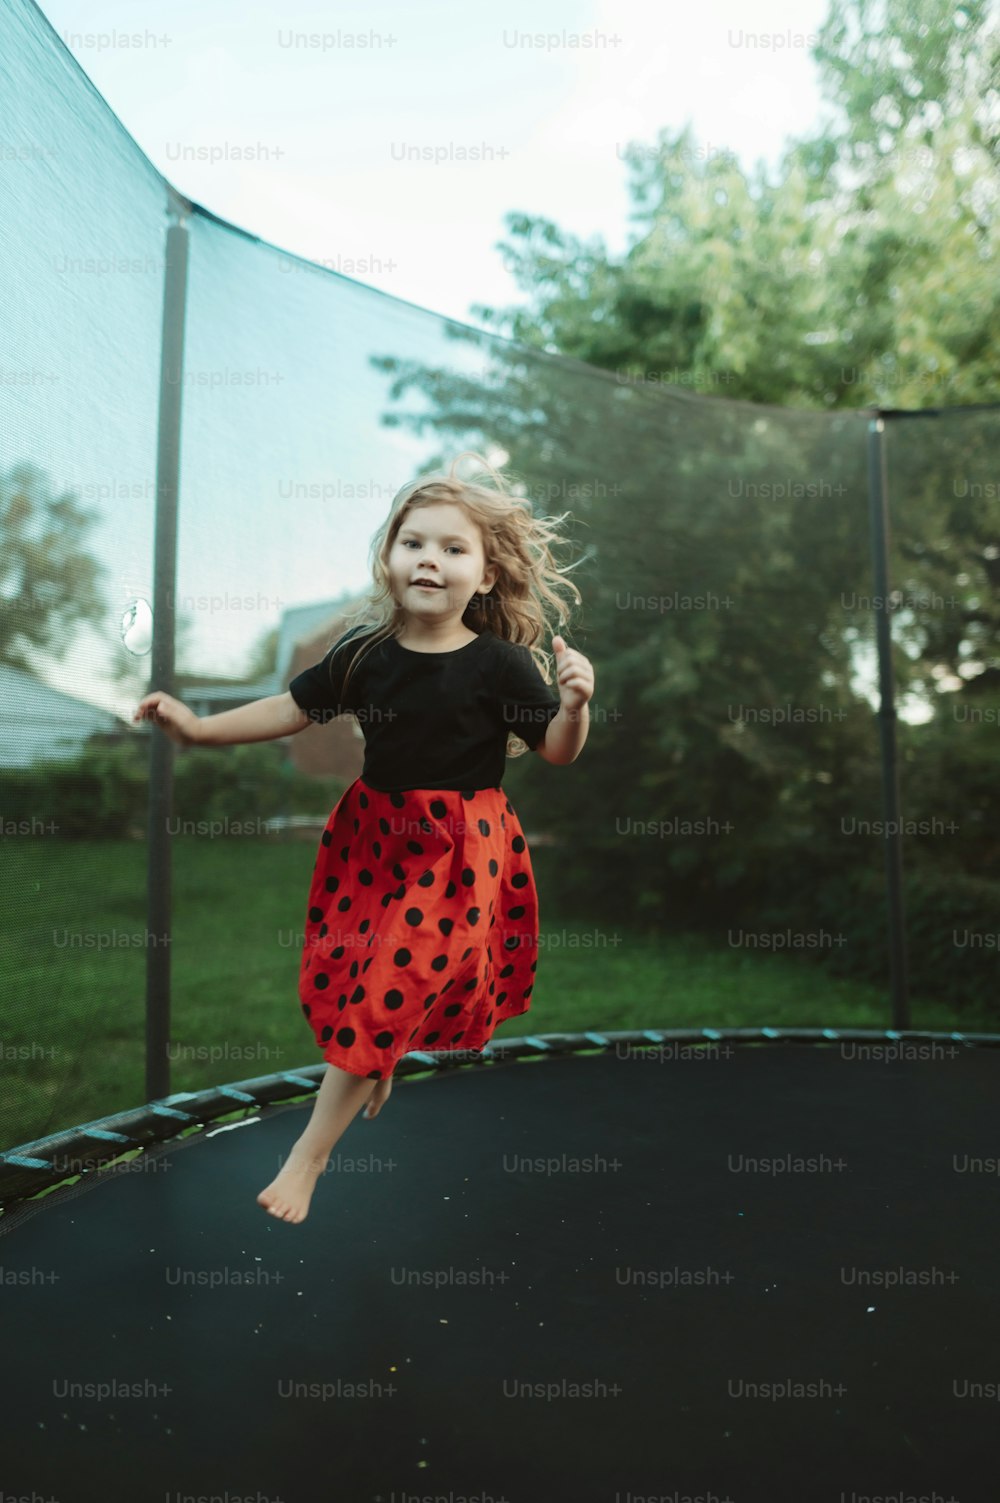 Una niña saltando en un trampolín afuera